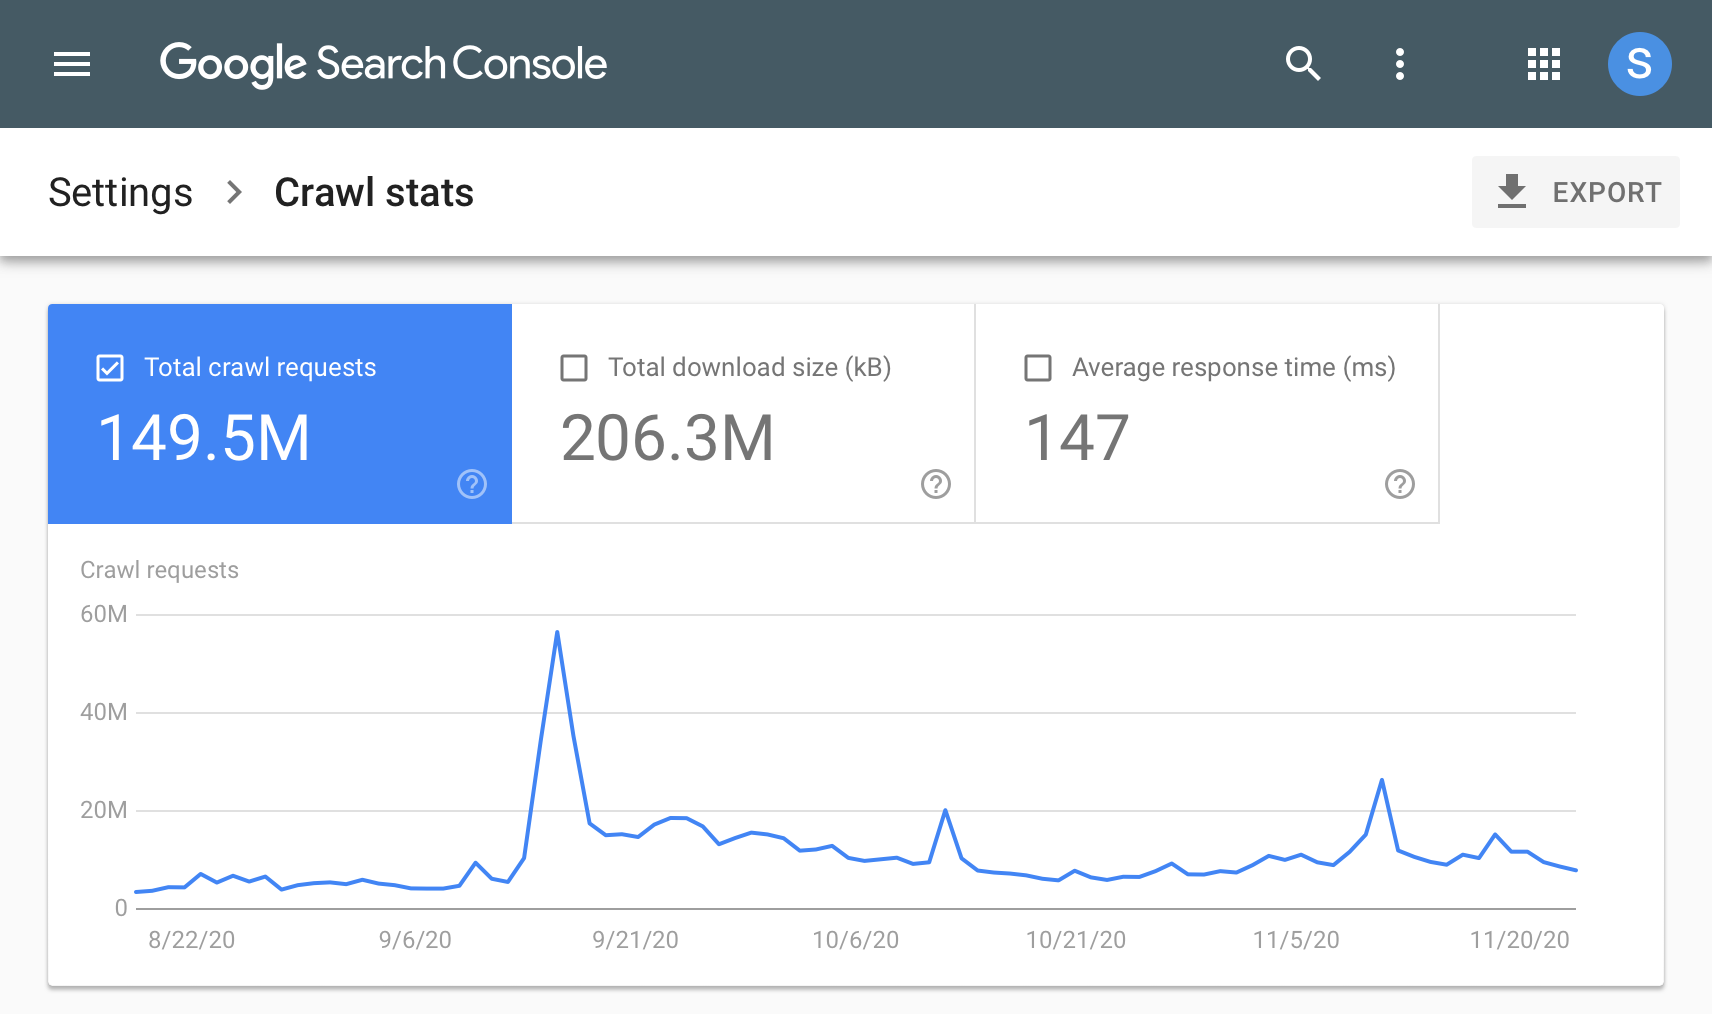 Diagramm der Search Console-Crawling-Statistiken im Zeitverlauf